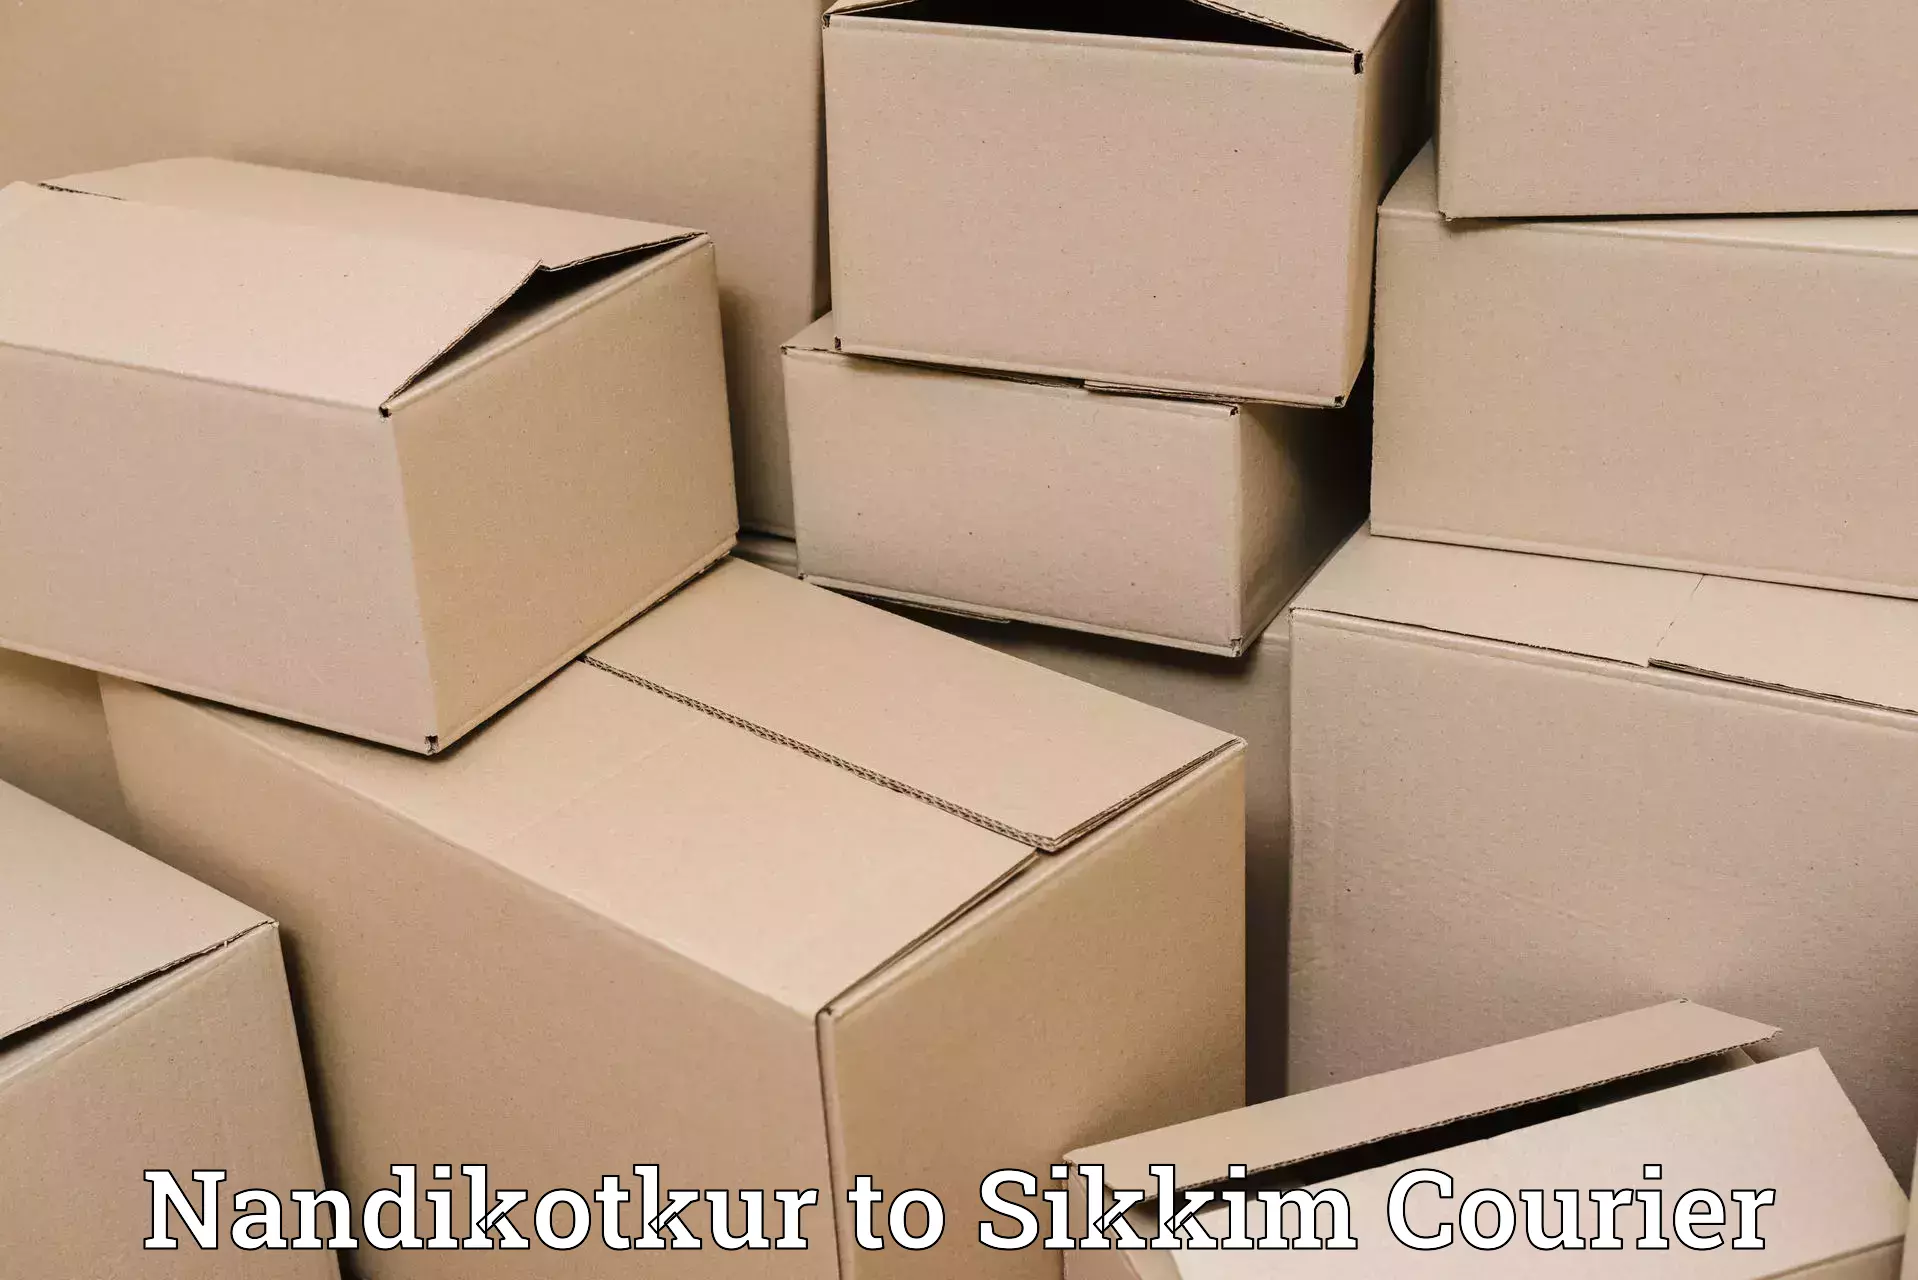 24/7 shipping services Nandikotkur to Sikkim